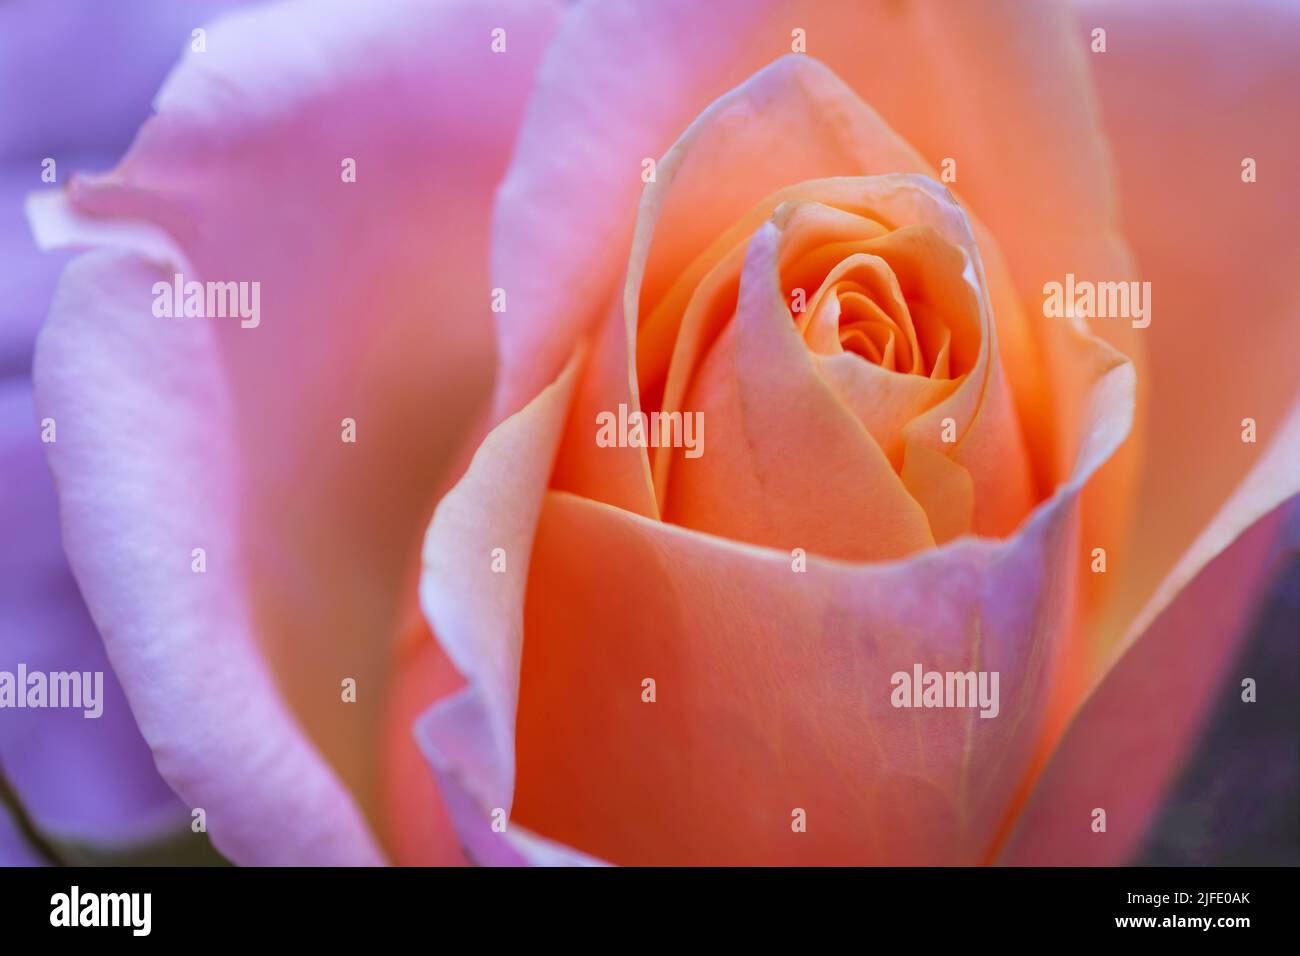 Eine Nahaufnahme einer wunderschönen aprikosenfarbenen Rose, während sie verblasst. Stockfoto